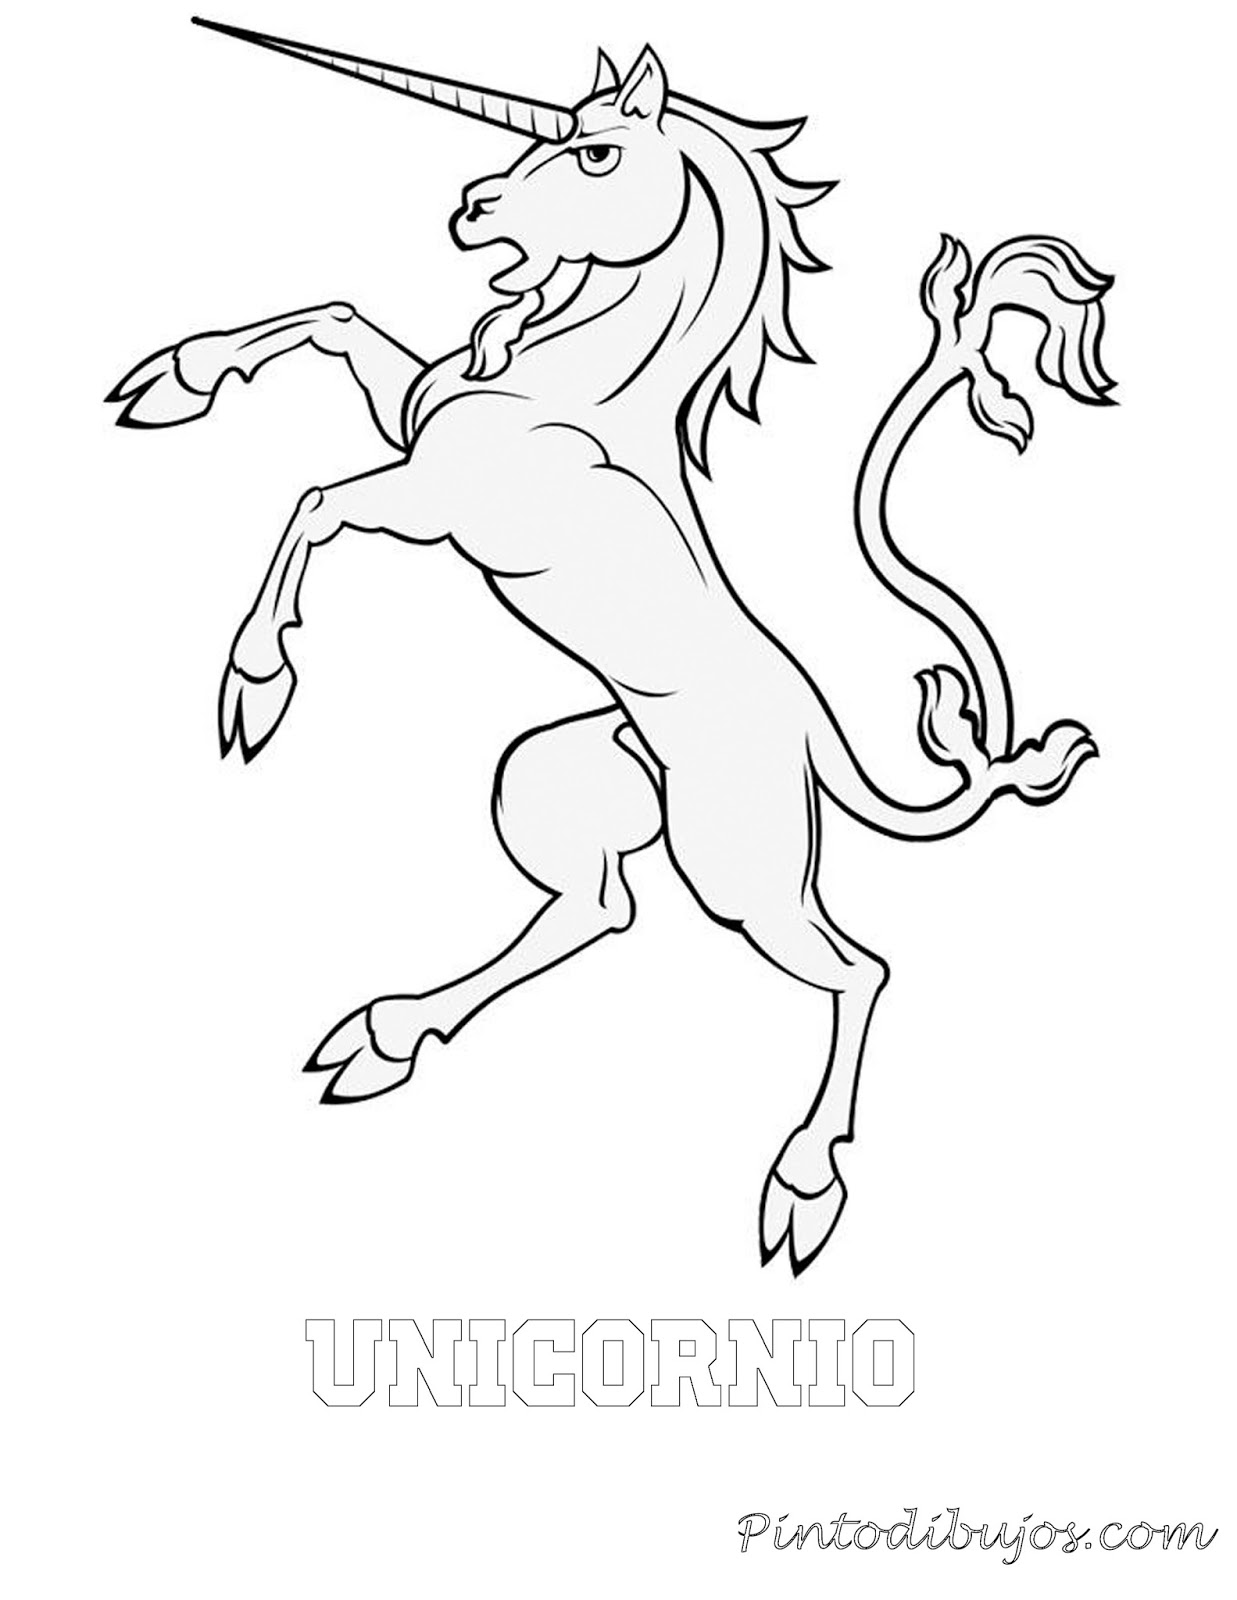 Unicornio para colorear